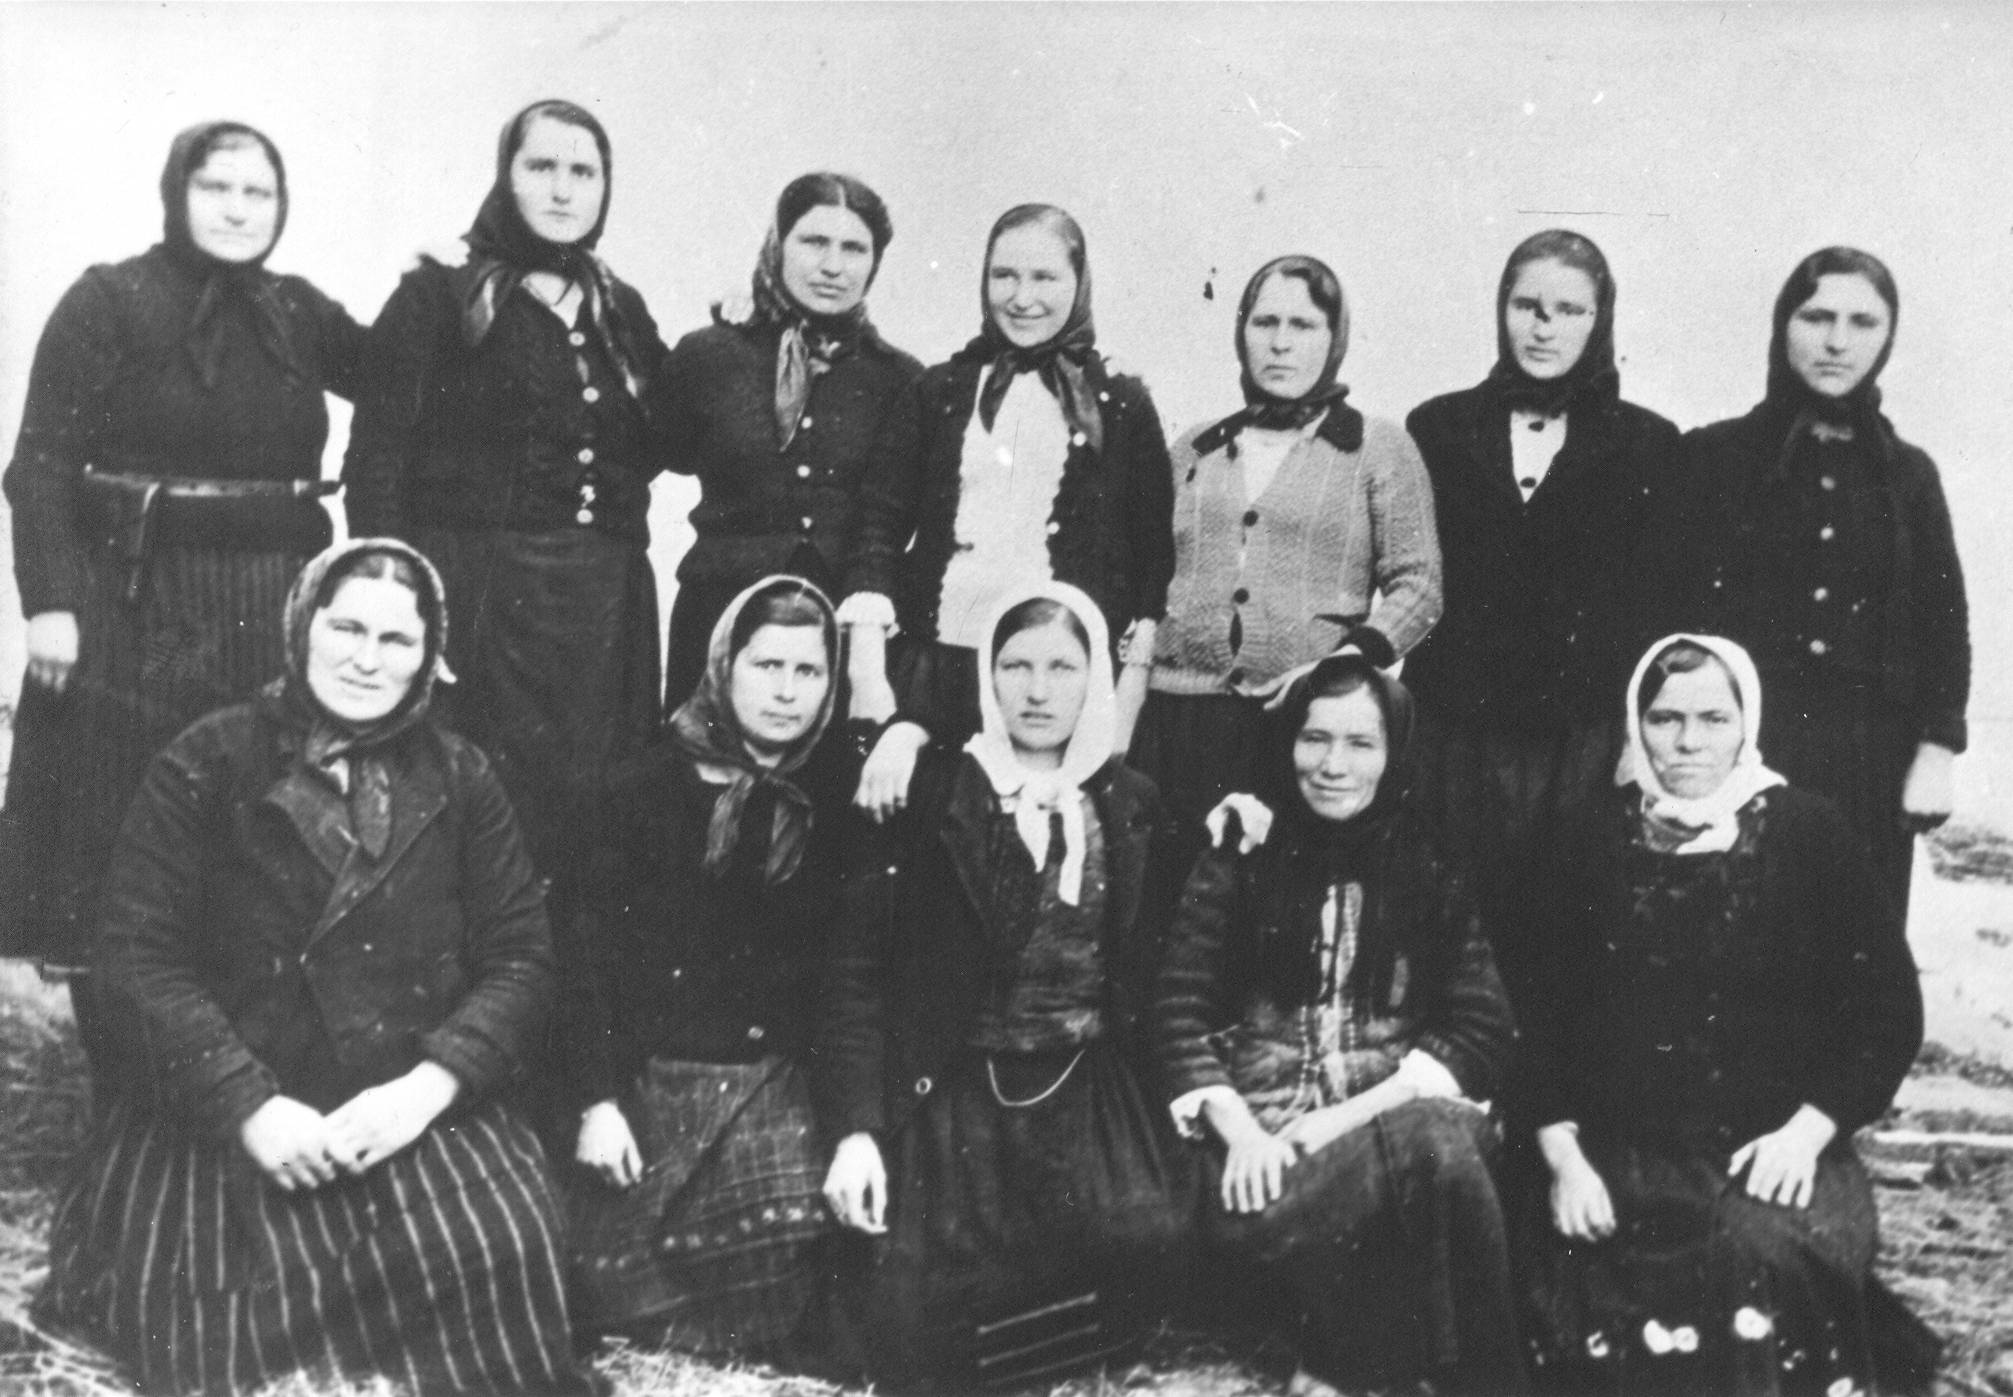 AFŽ se borio protiv utabanih patrijarhalnih i rodnih stereotipa, a krajnji rezultat njihove borbe bilo je ustavno izjednačavanje statusa žena sa statusom muškaraca. Žene su pravo glasa u Jugoslaviji dobile već 1945. godine, dok primjerice, u Švicarskoj nisu do 1972. godine.
<br>
<br>
Na slici je AFŽ u Pustoj Reci, 1943. godina